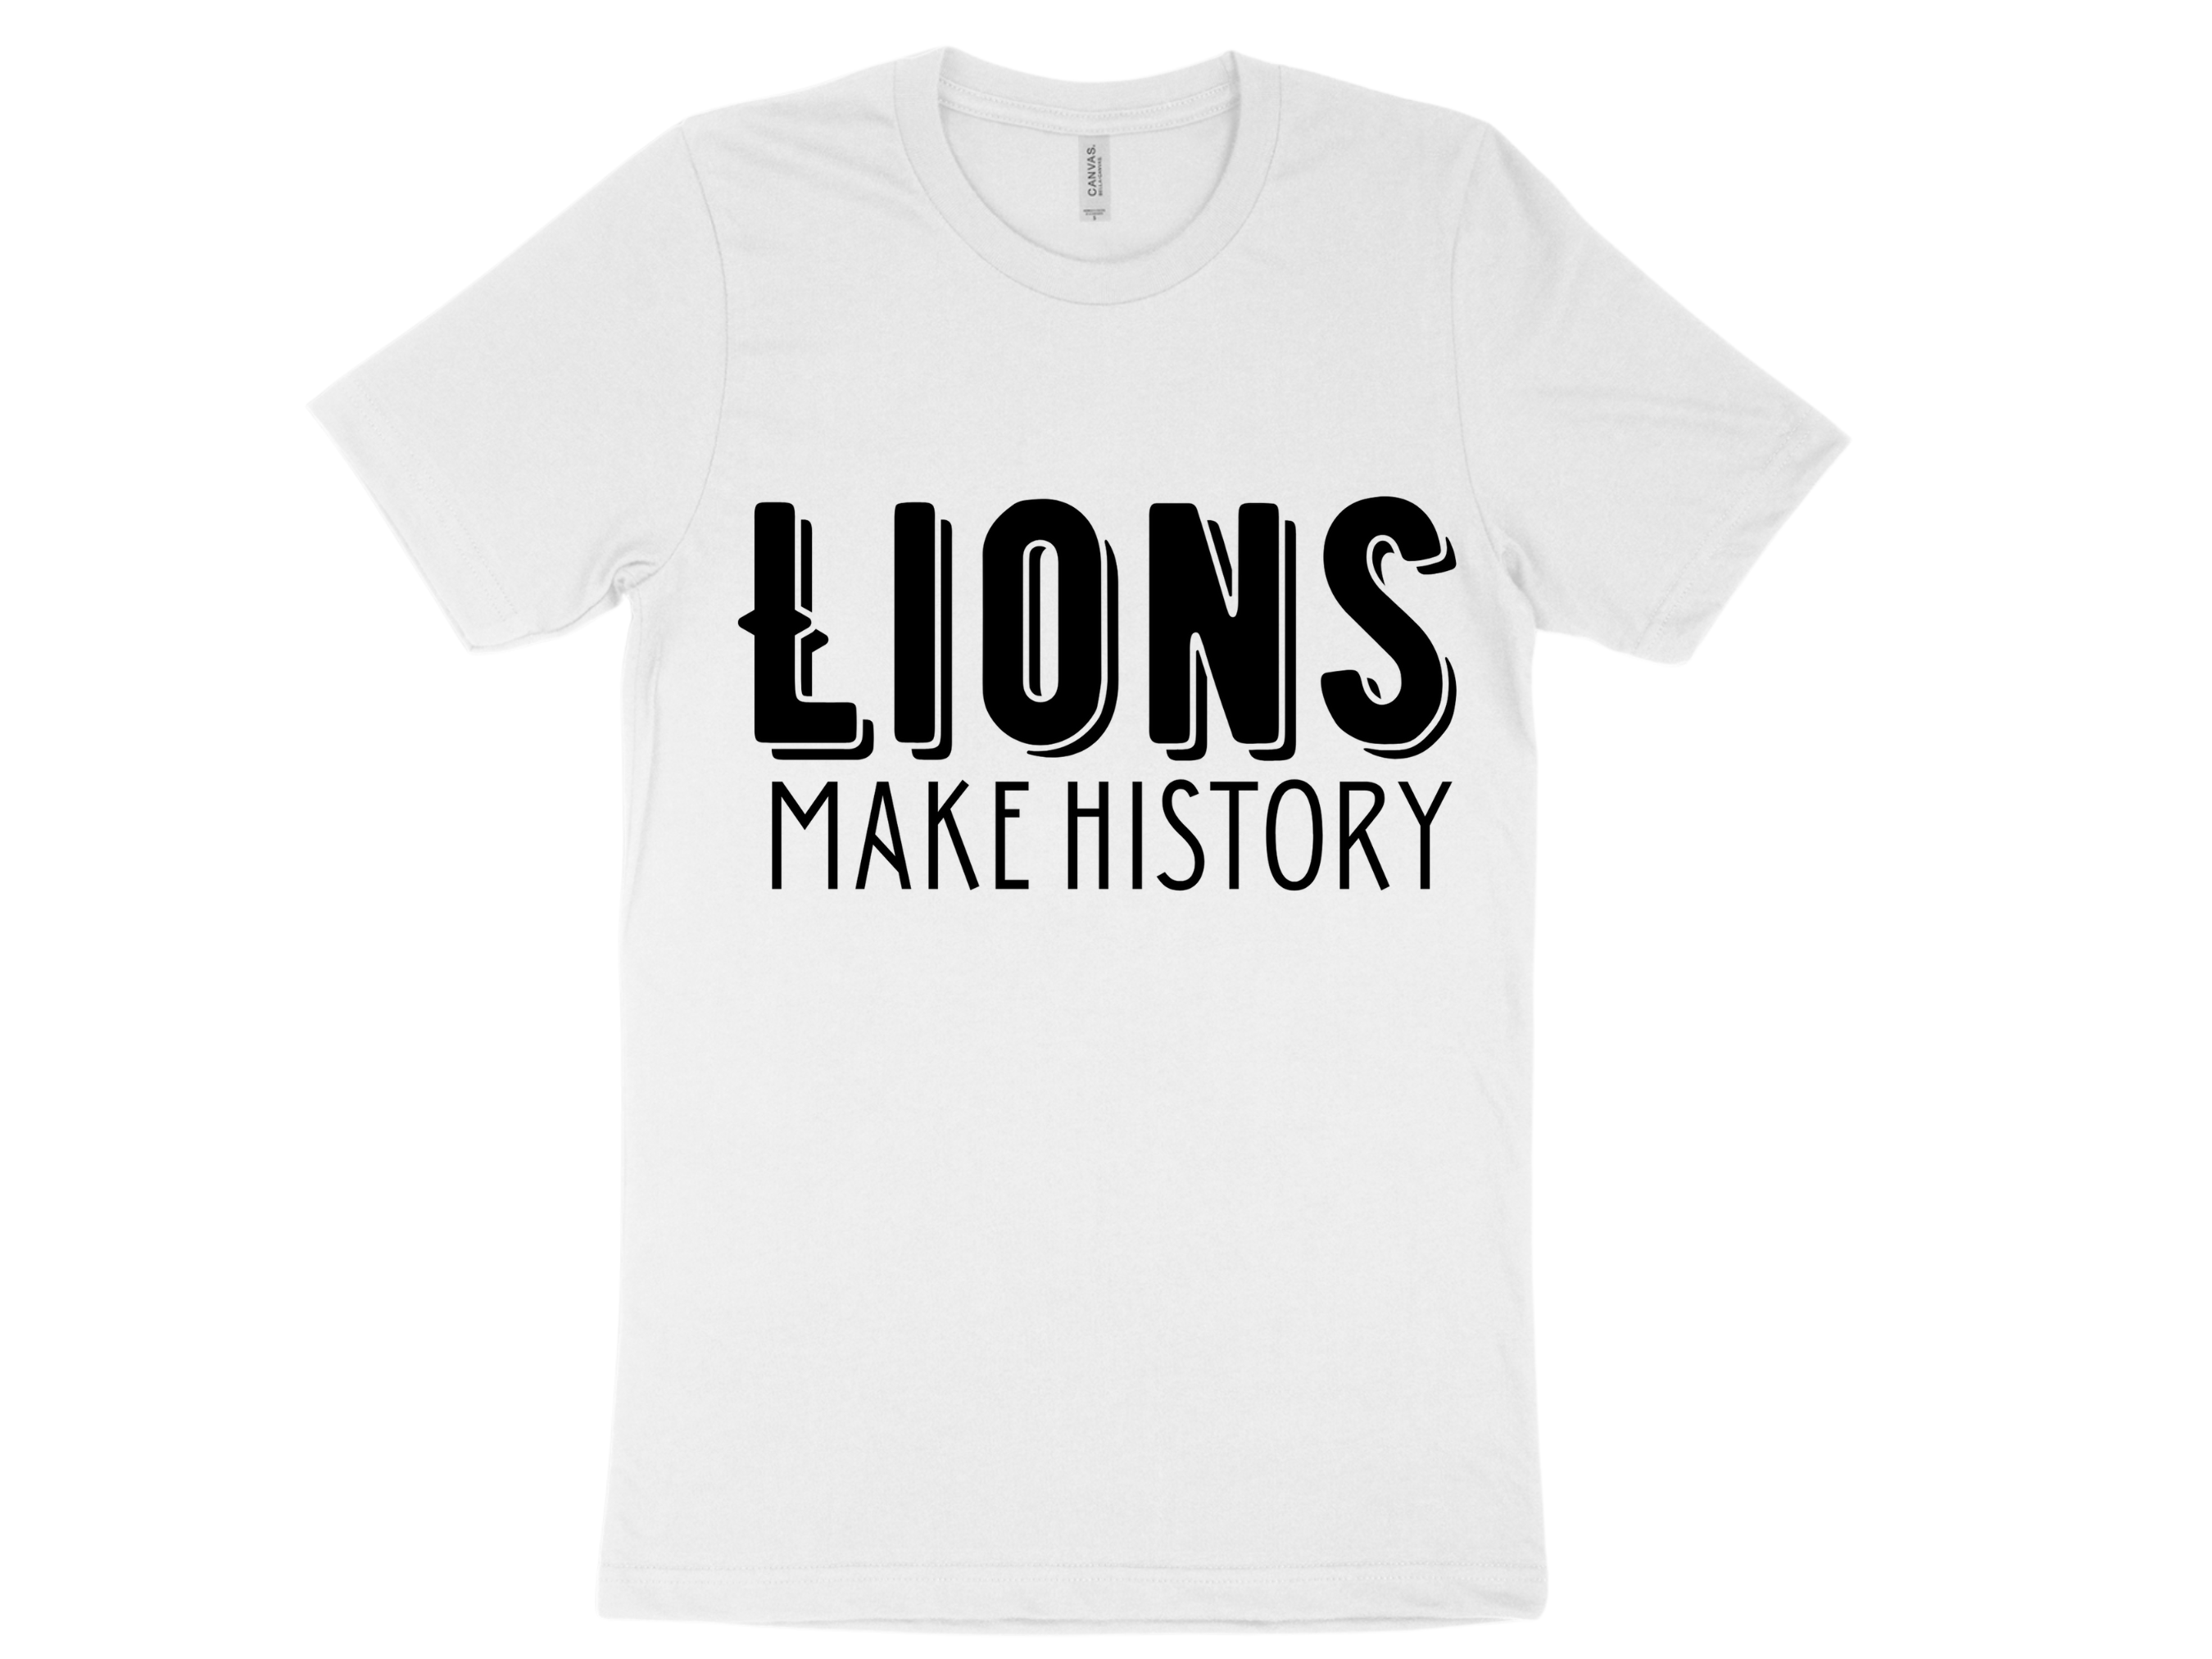 Lions Make History - White Short Sleeve  Large Image